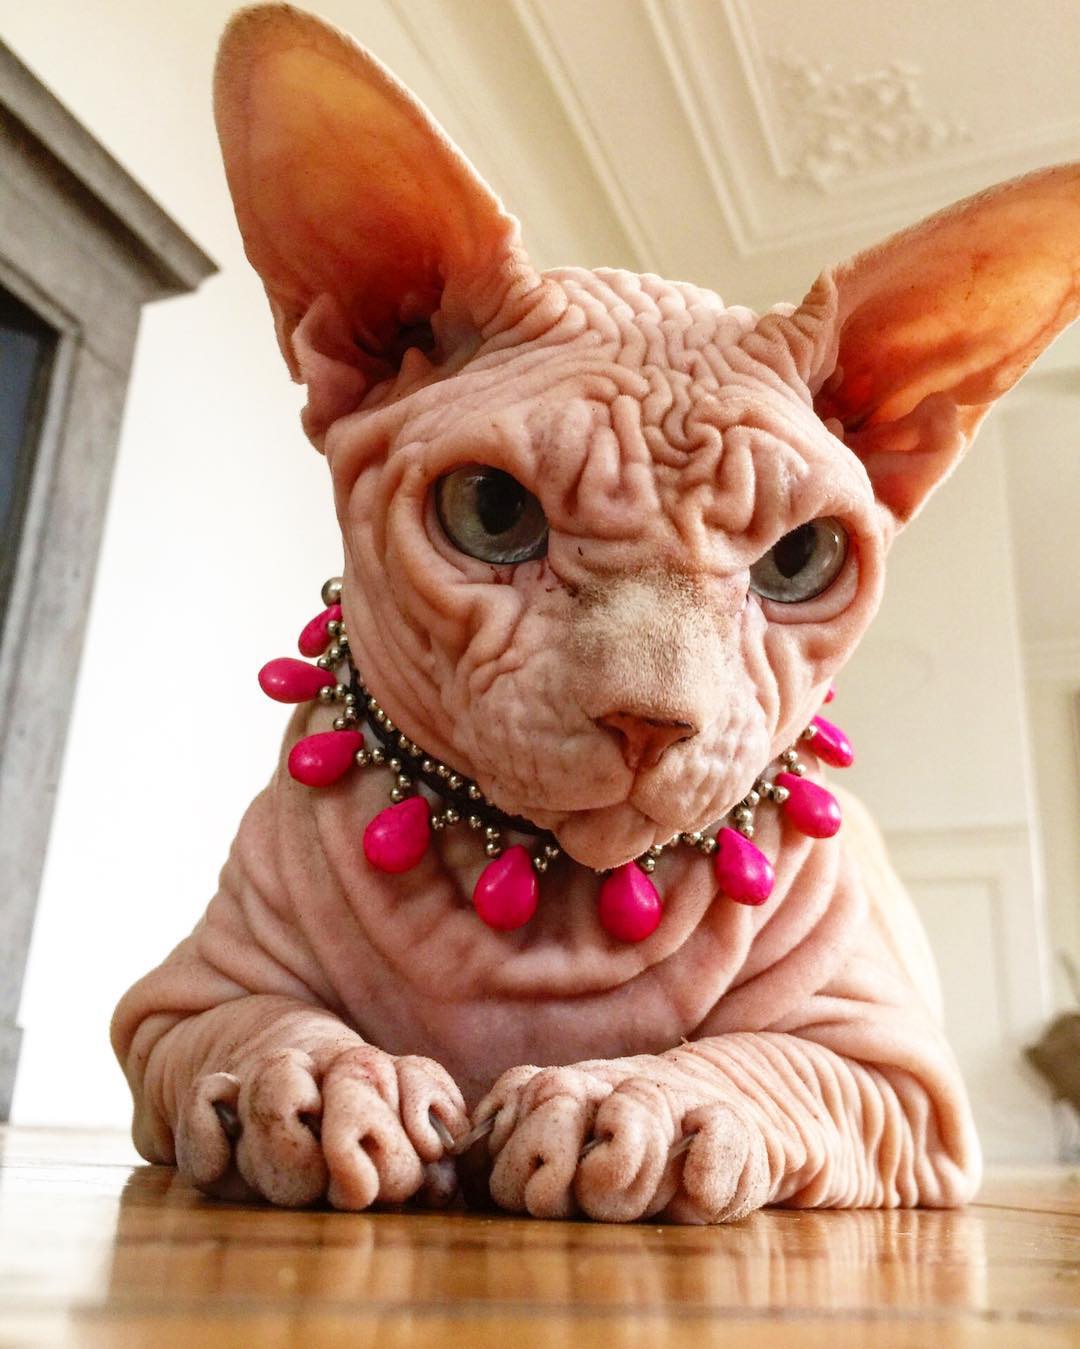 Лысый кот с суровым взглядом популярен в Instagram